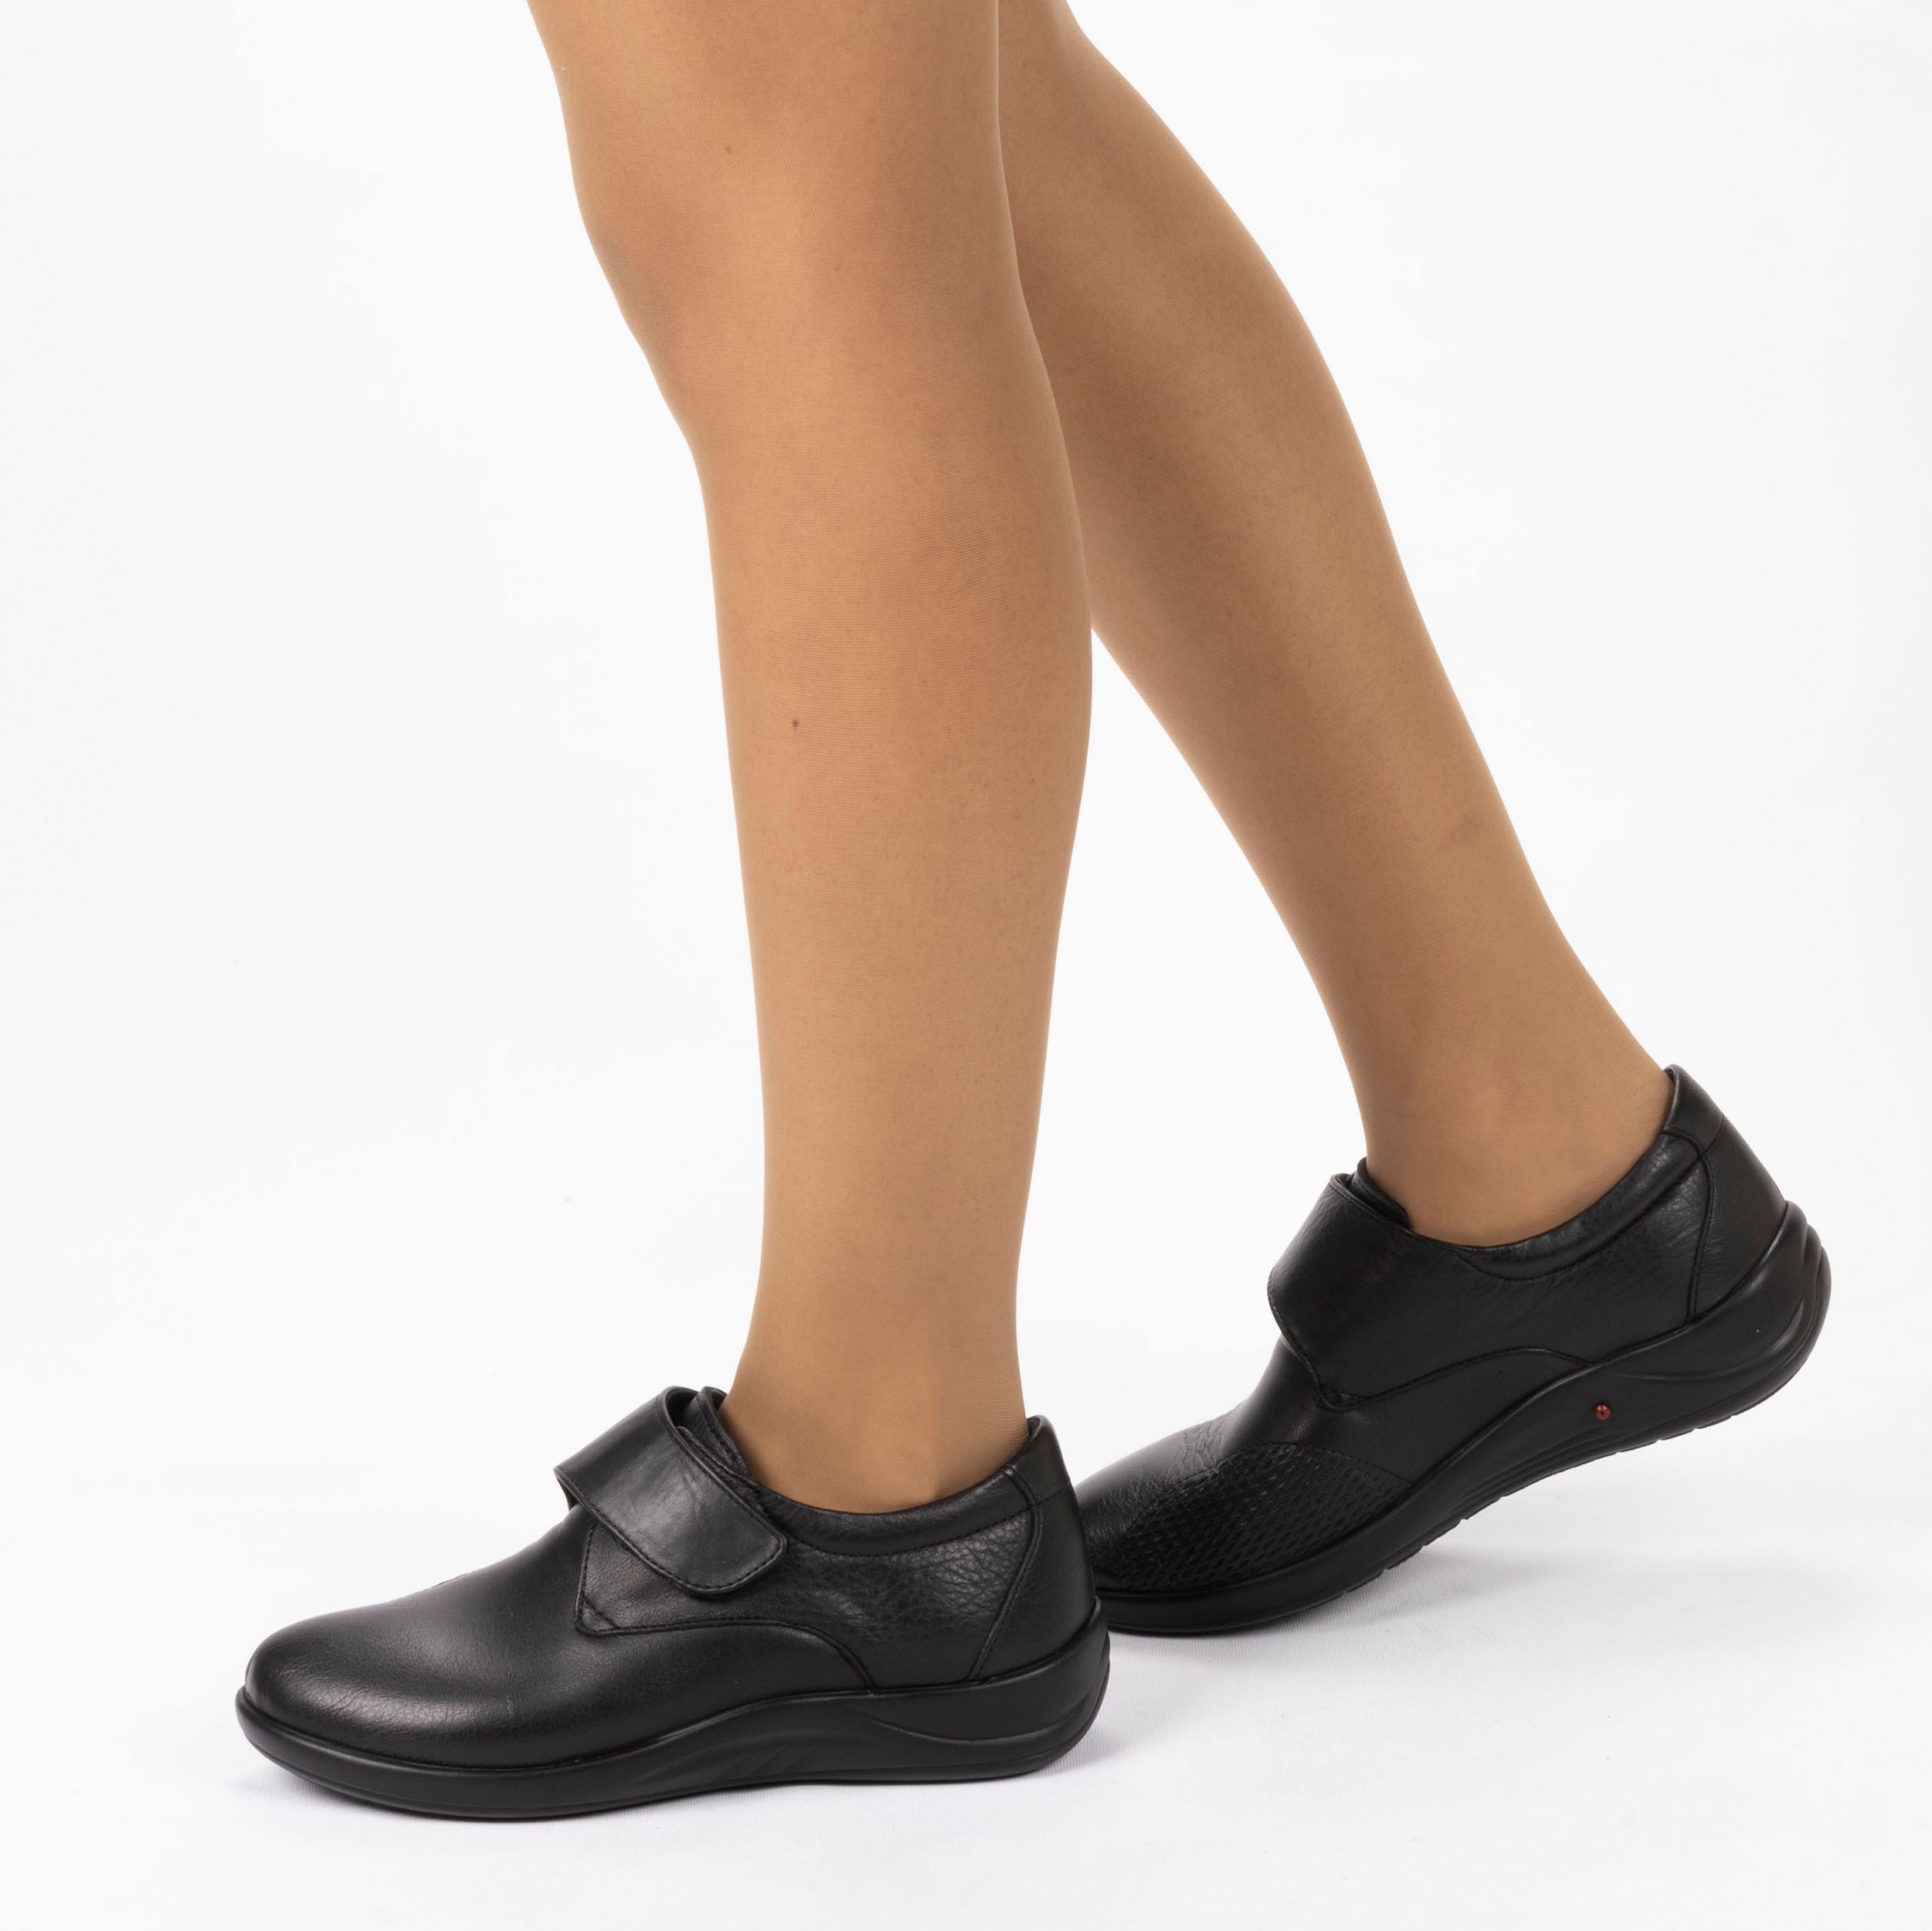 Kadın Hakiki Deri Anatomik Hafif Tasarım Topuk Yastıklı Cırt Cırtlı Kemik Çıkıntısı Konfort Ayakkabı, Renk: Siyah, Beden: 36